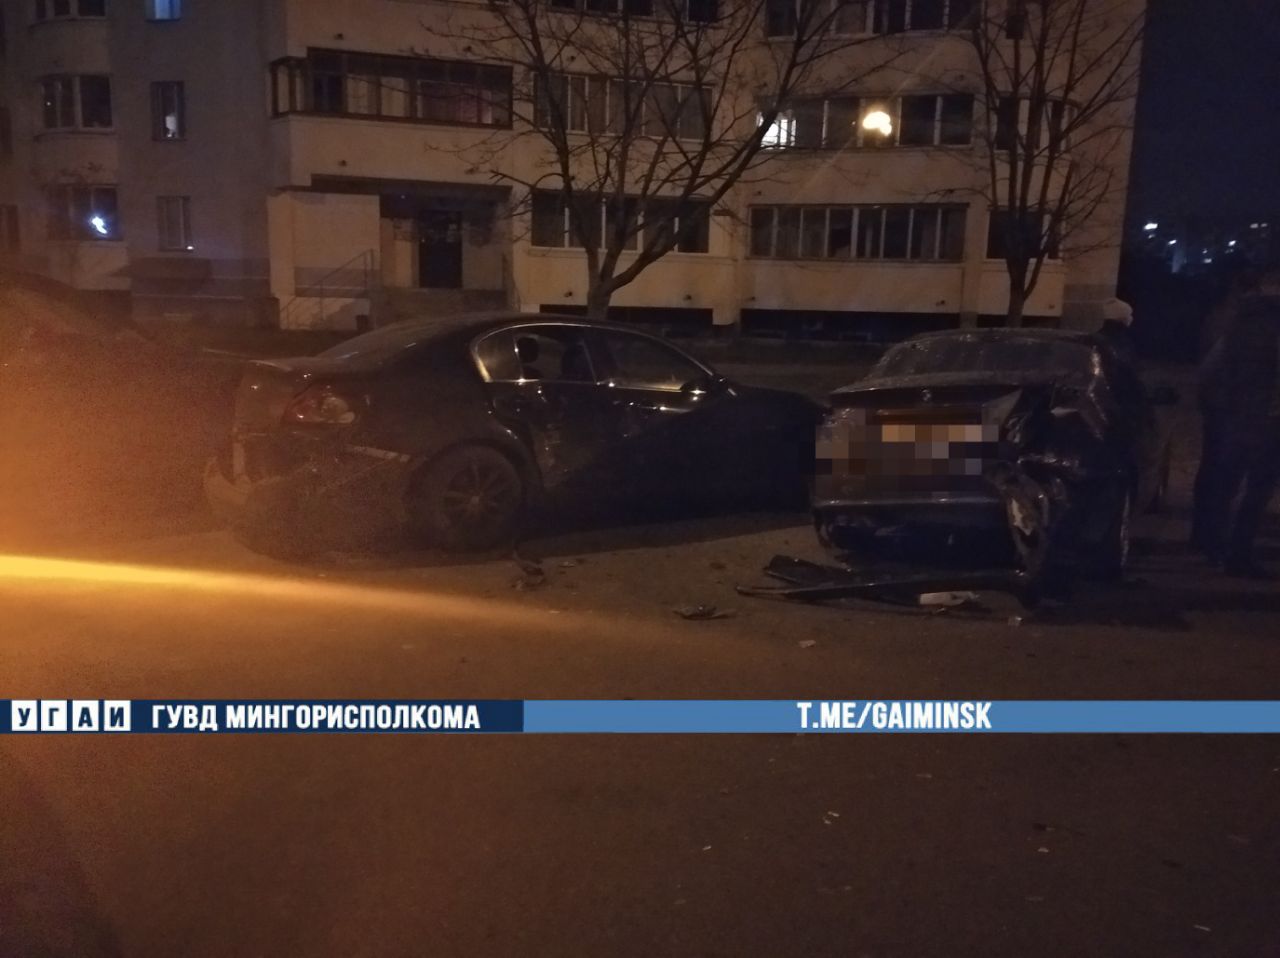 Пьяная пара решила поучиться ездить на Volkswagen и разбила пять автомобилей в Минске